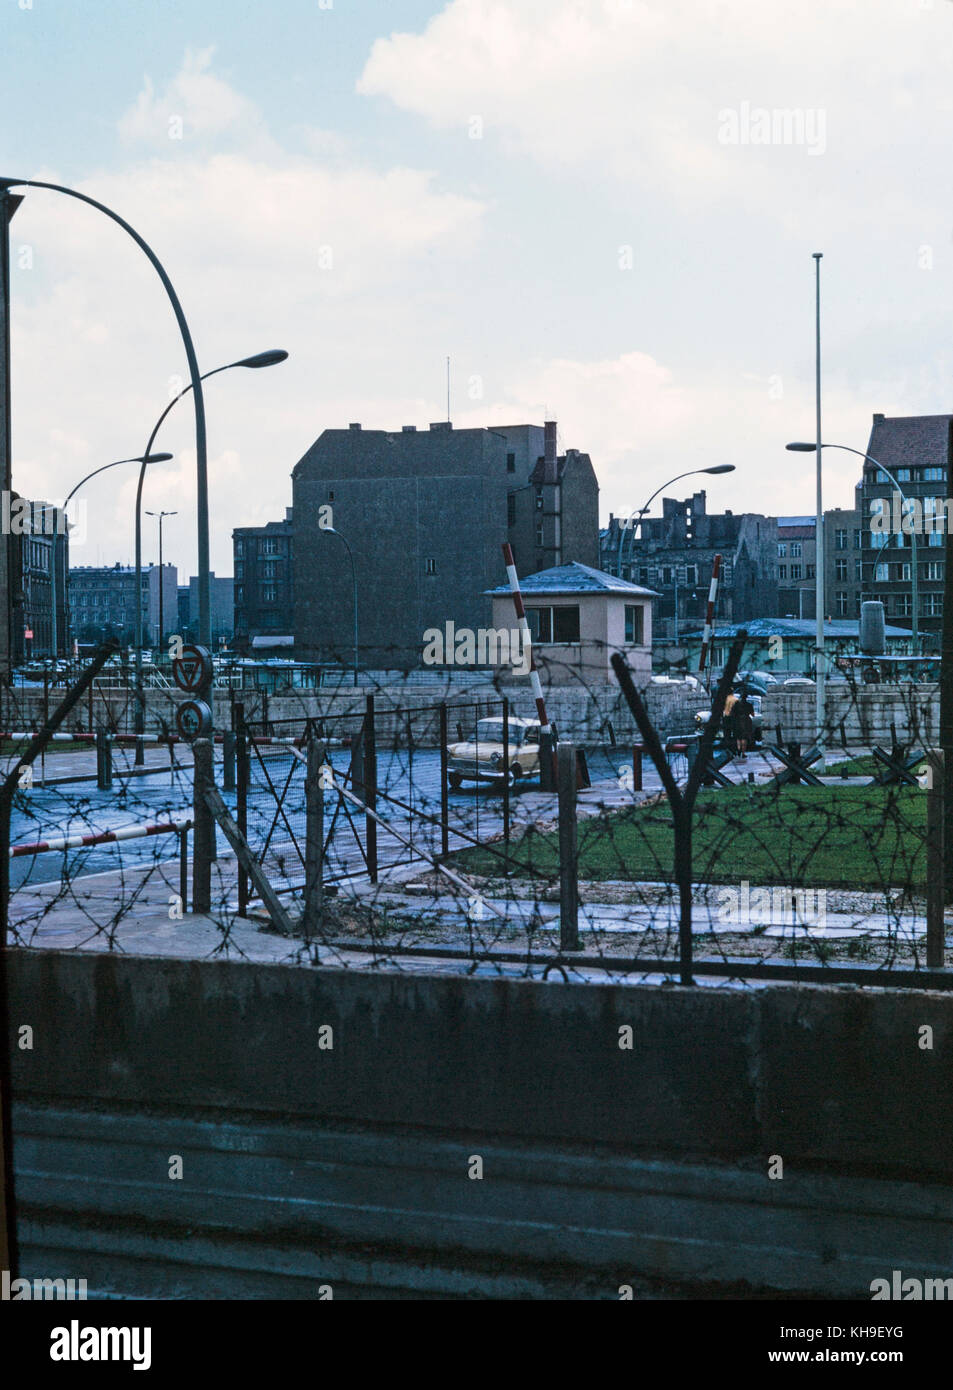 Foto scattata in agosto 1965 mostra vista da ovest lato tedesco di Berlino, attraverso il muro di Berlino e a Berlino est nella Germania orientale. La foto mostra la parete ricoperta di filo spinato e una guardia militare camera. Foto Stock